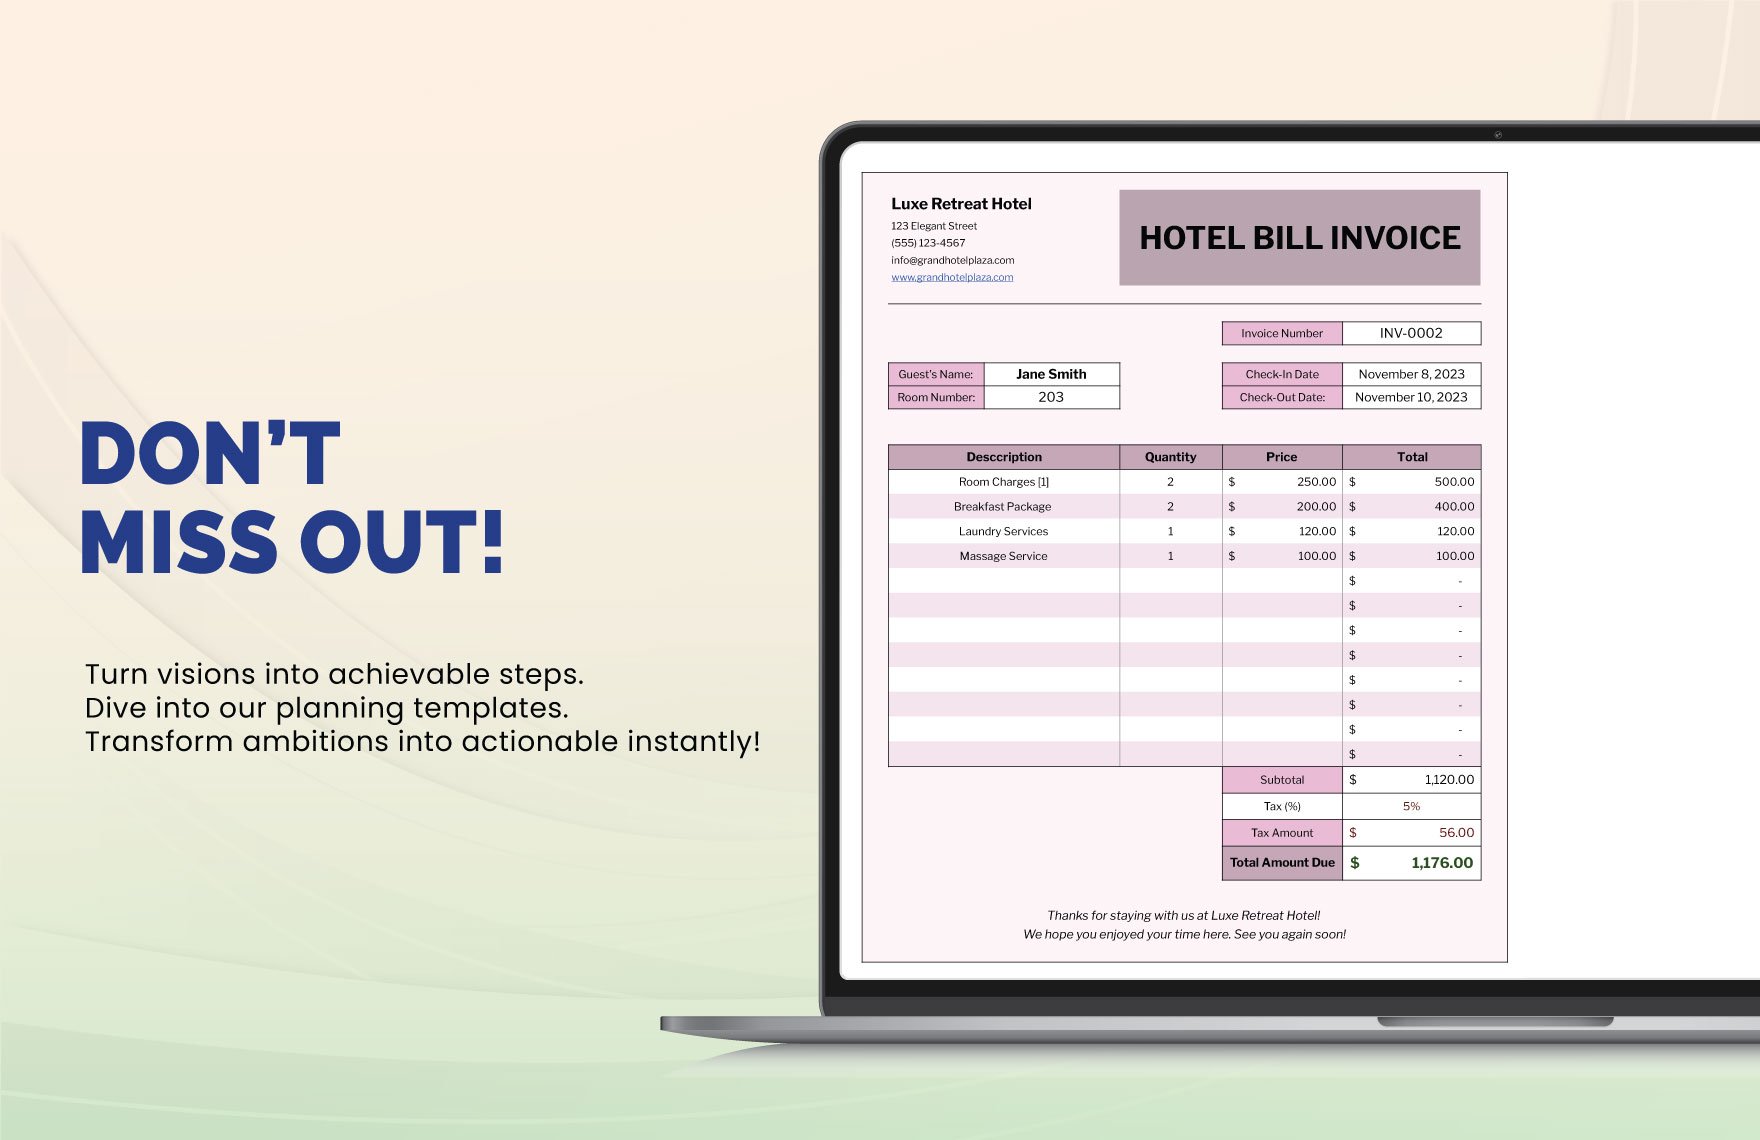 Hotel Bill Invoice Template